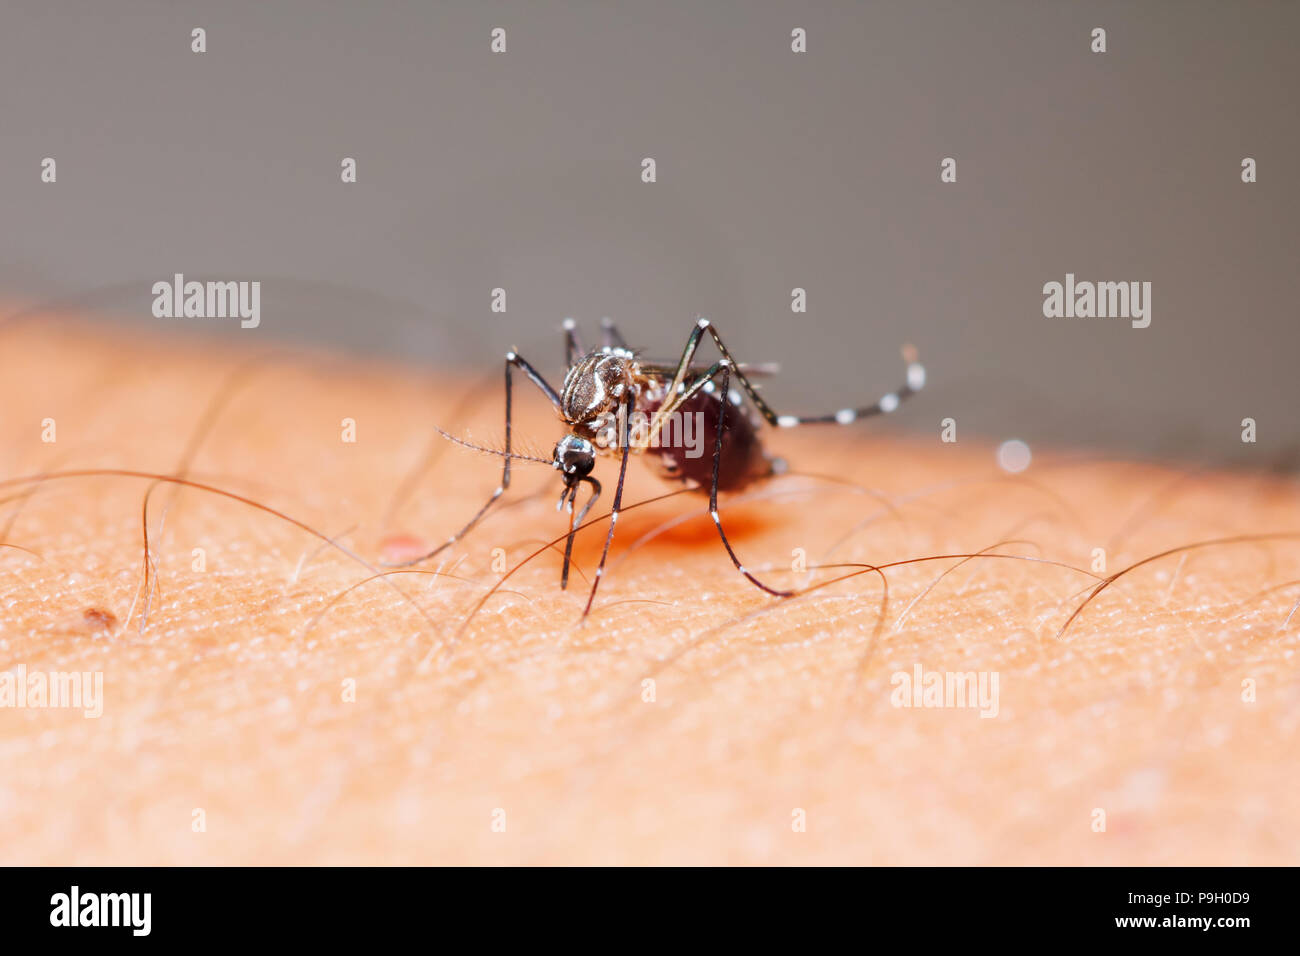 Cerca del mosquito Aedes aegypti (hembra) a chupar la sangre de la piel humana Foto de stock